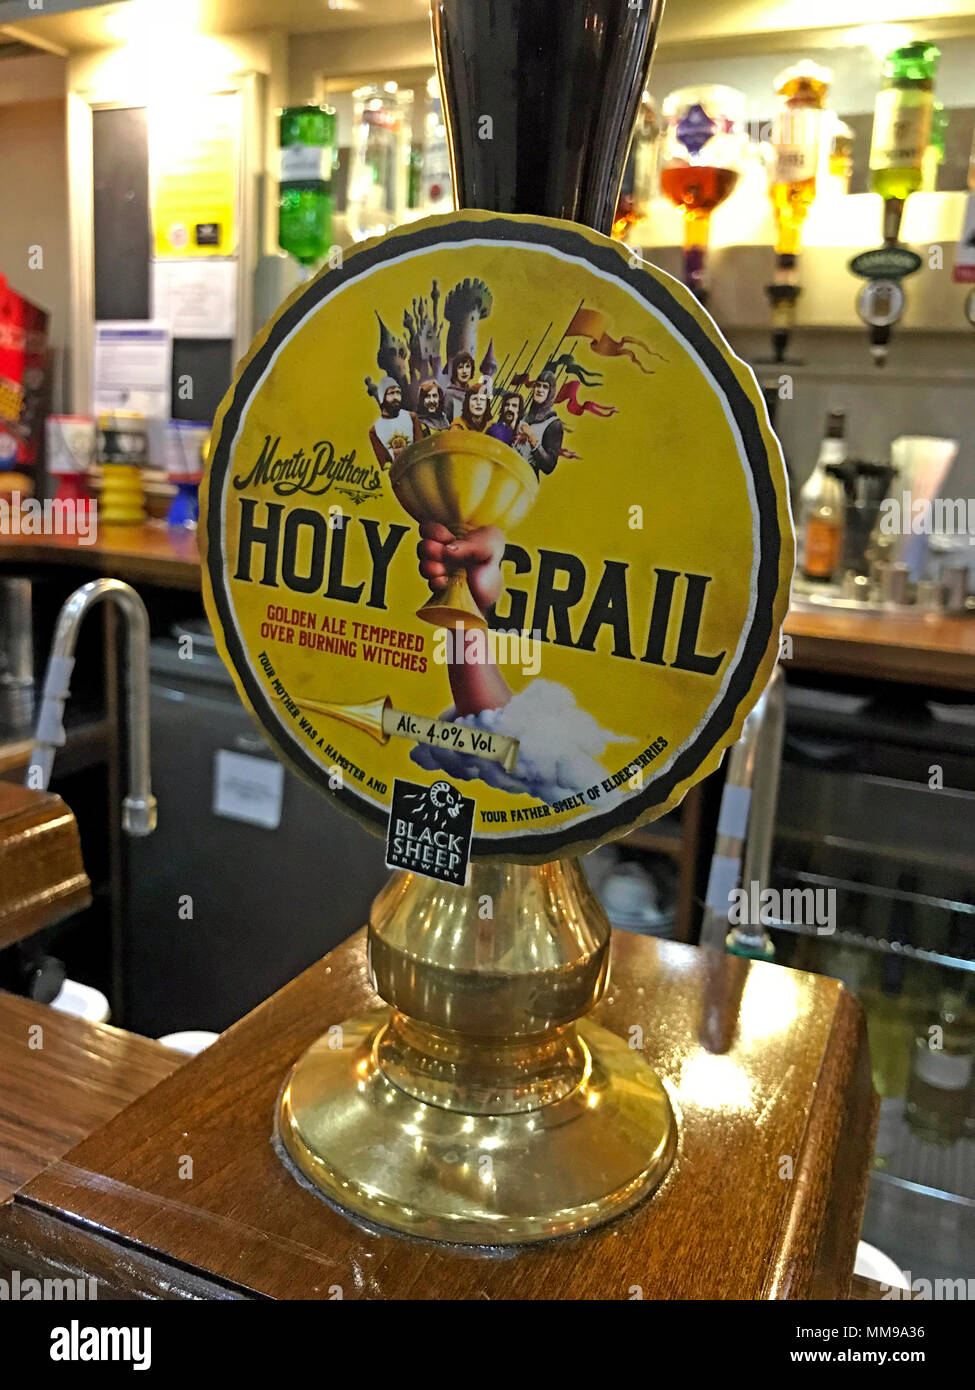 Black Sheep (Monty Pythons) Holy Graal bière amère CAMRA, pompe sur un bar, Angleterre, Royaume-Uni Banque D'Images